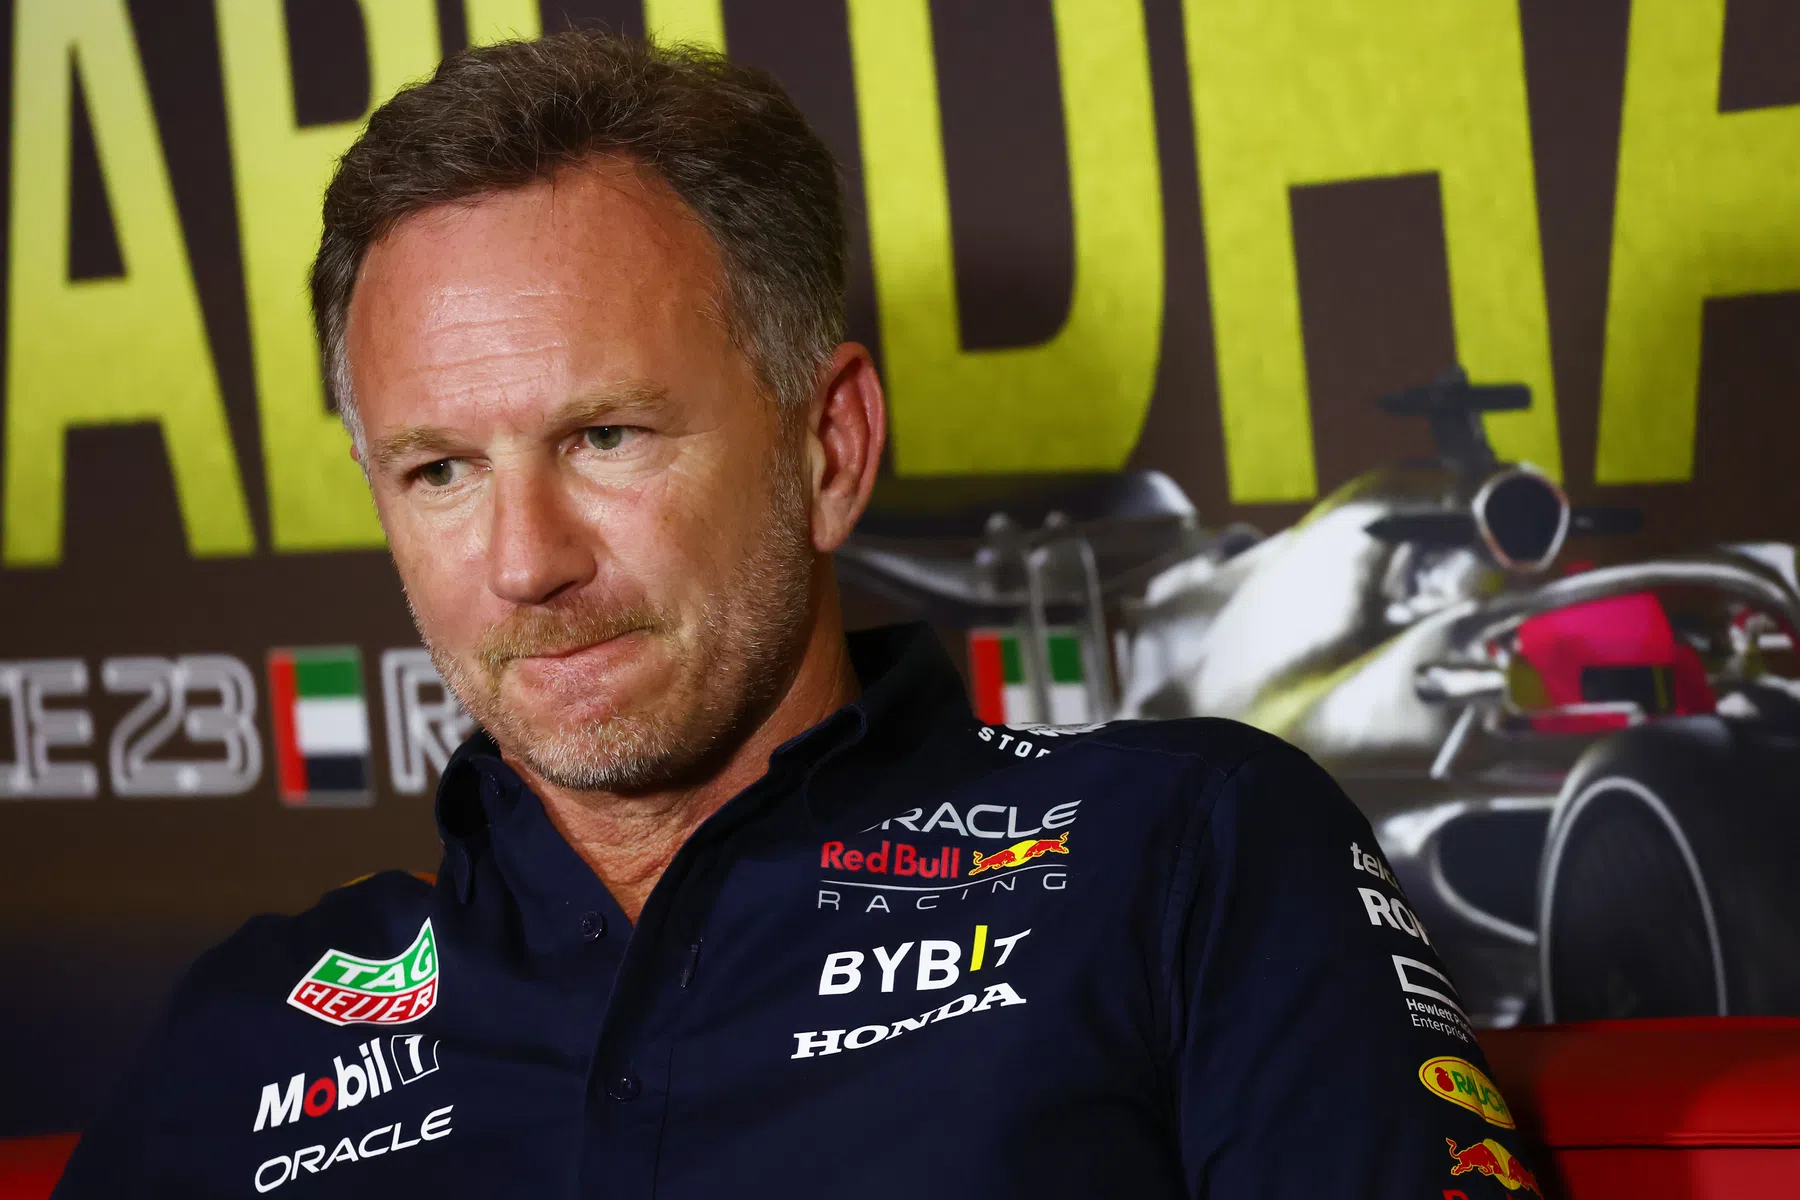 Formule 1 wacht in spanning af: ‘Dan valt besluit over lot teambaas Horner’